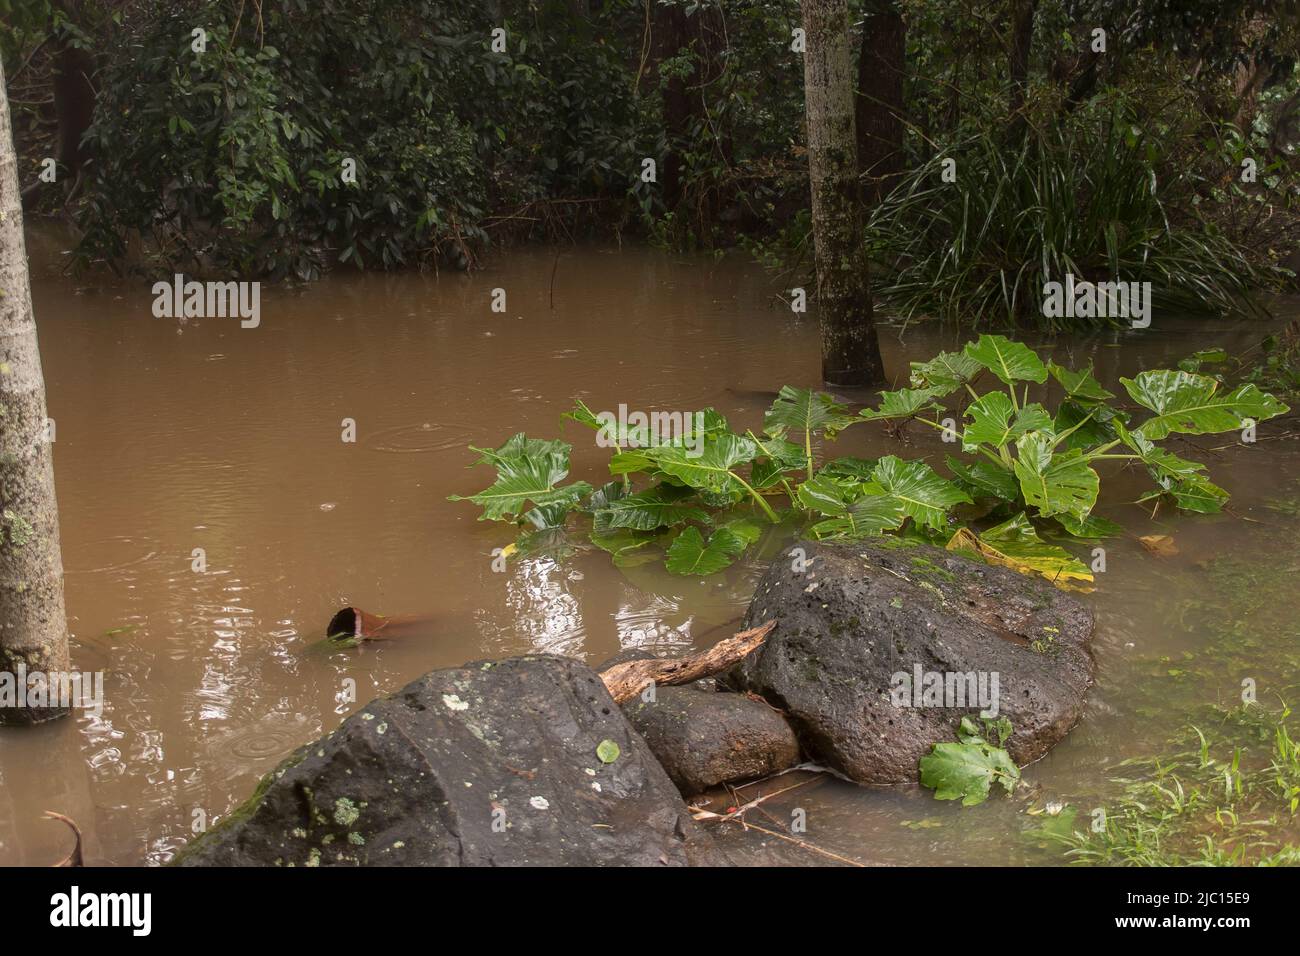 Überschwemmtes Gartengebiet in Queensland, Australien, nach tagelang starken Regenfällen. Neblig graues Wetter. Pflanzen und Bäume teilweise untergetaucht und sehr nass. Stockfoto